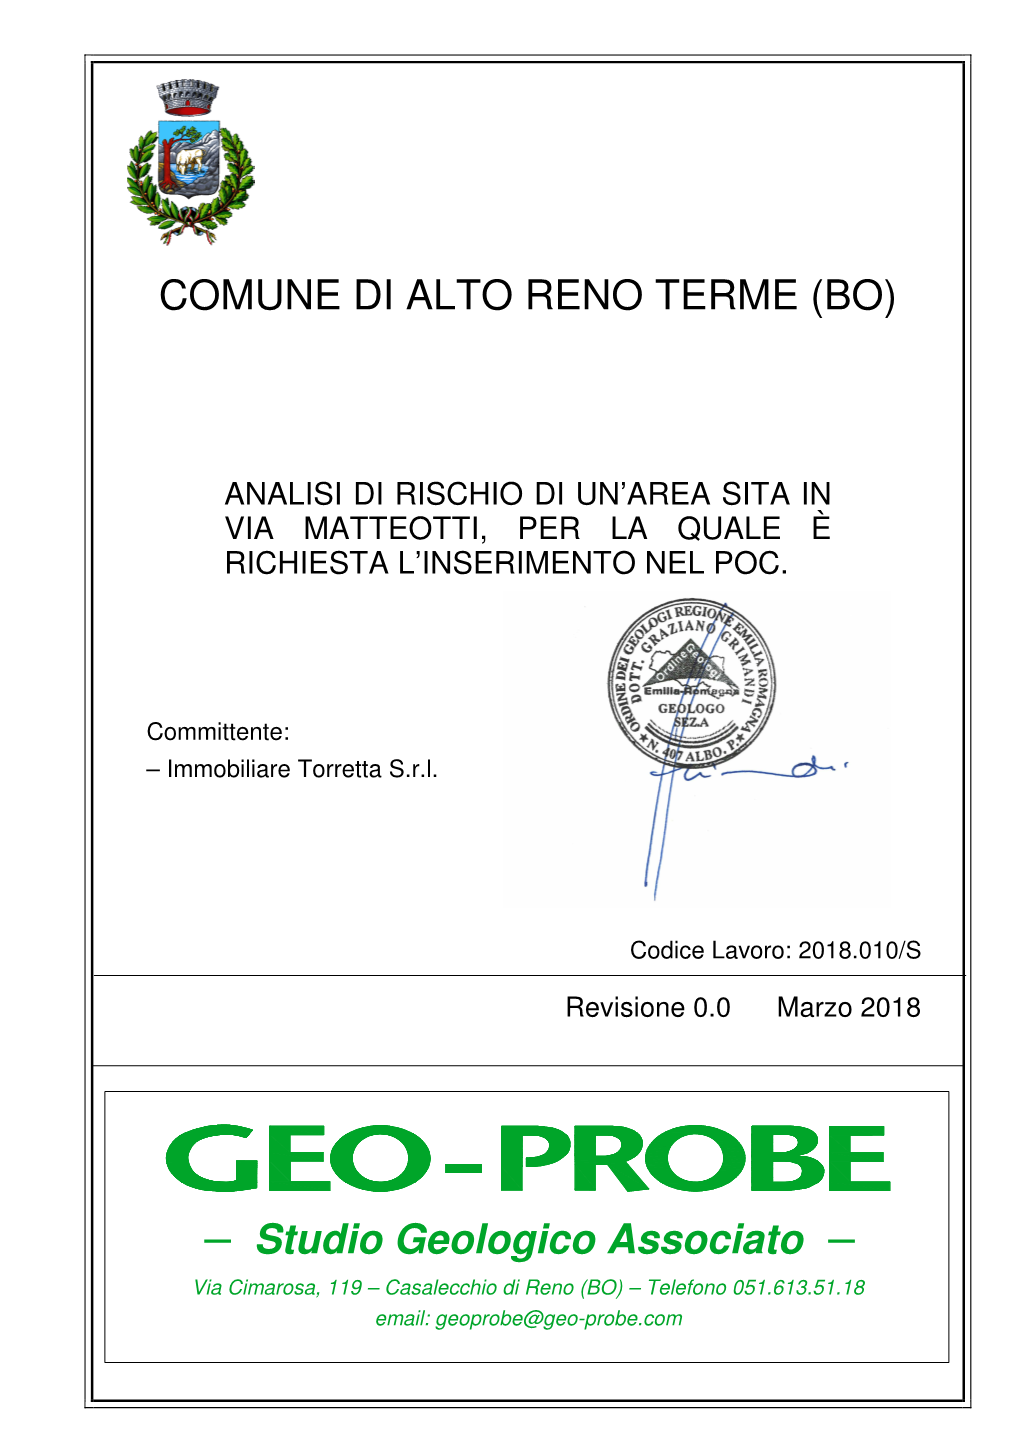 COMUNE DI ALTO RENO TERME (BO) Studio Geologico Associato